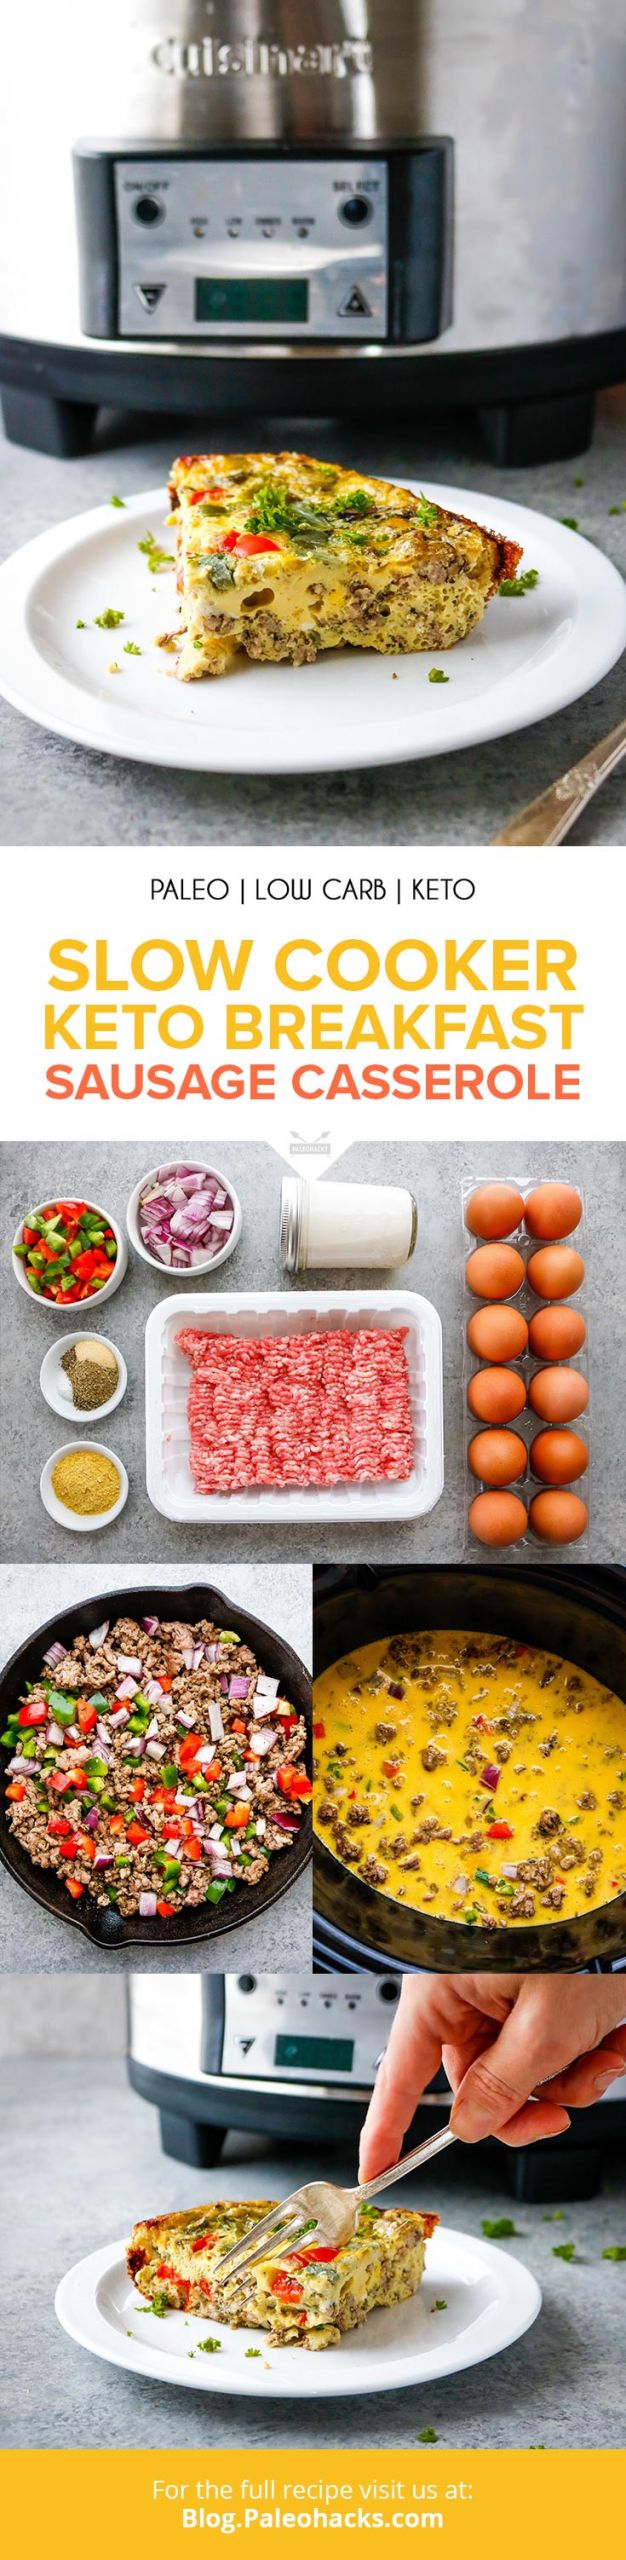 Crockpot Keto Breakfast
 Slow Cooker Keto Breakfast Sausage Casserole